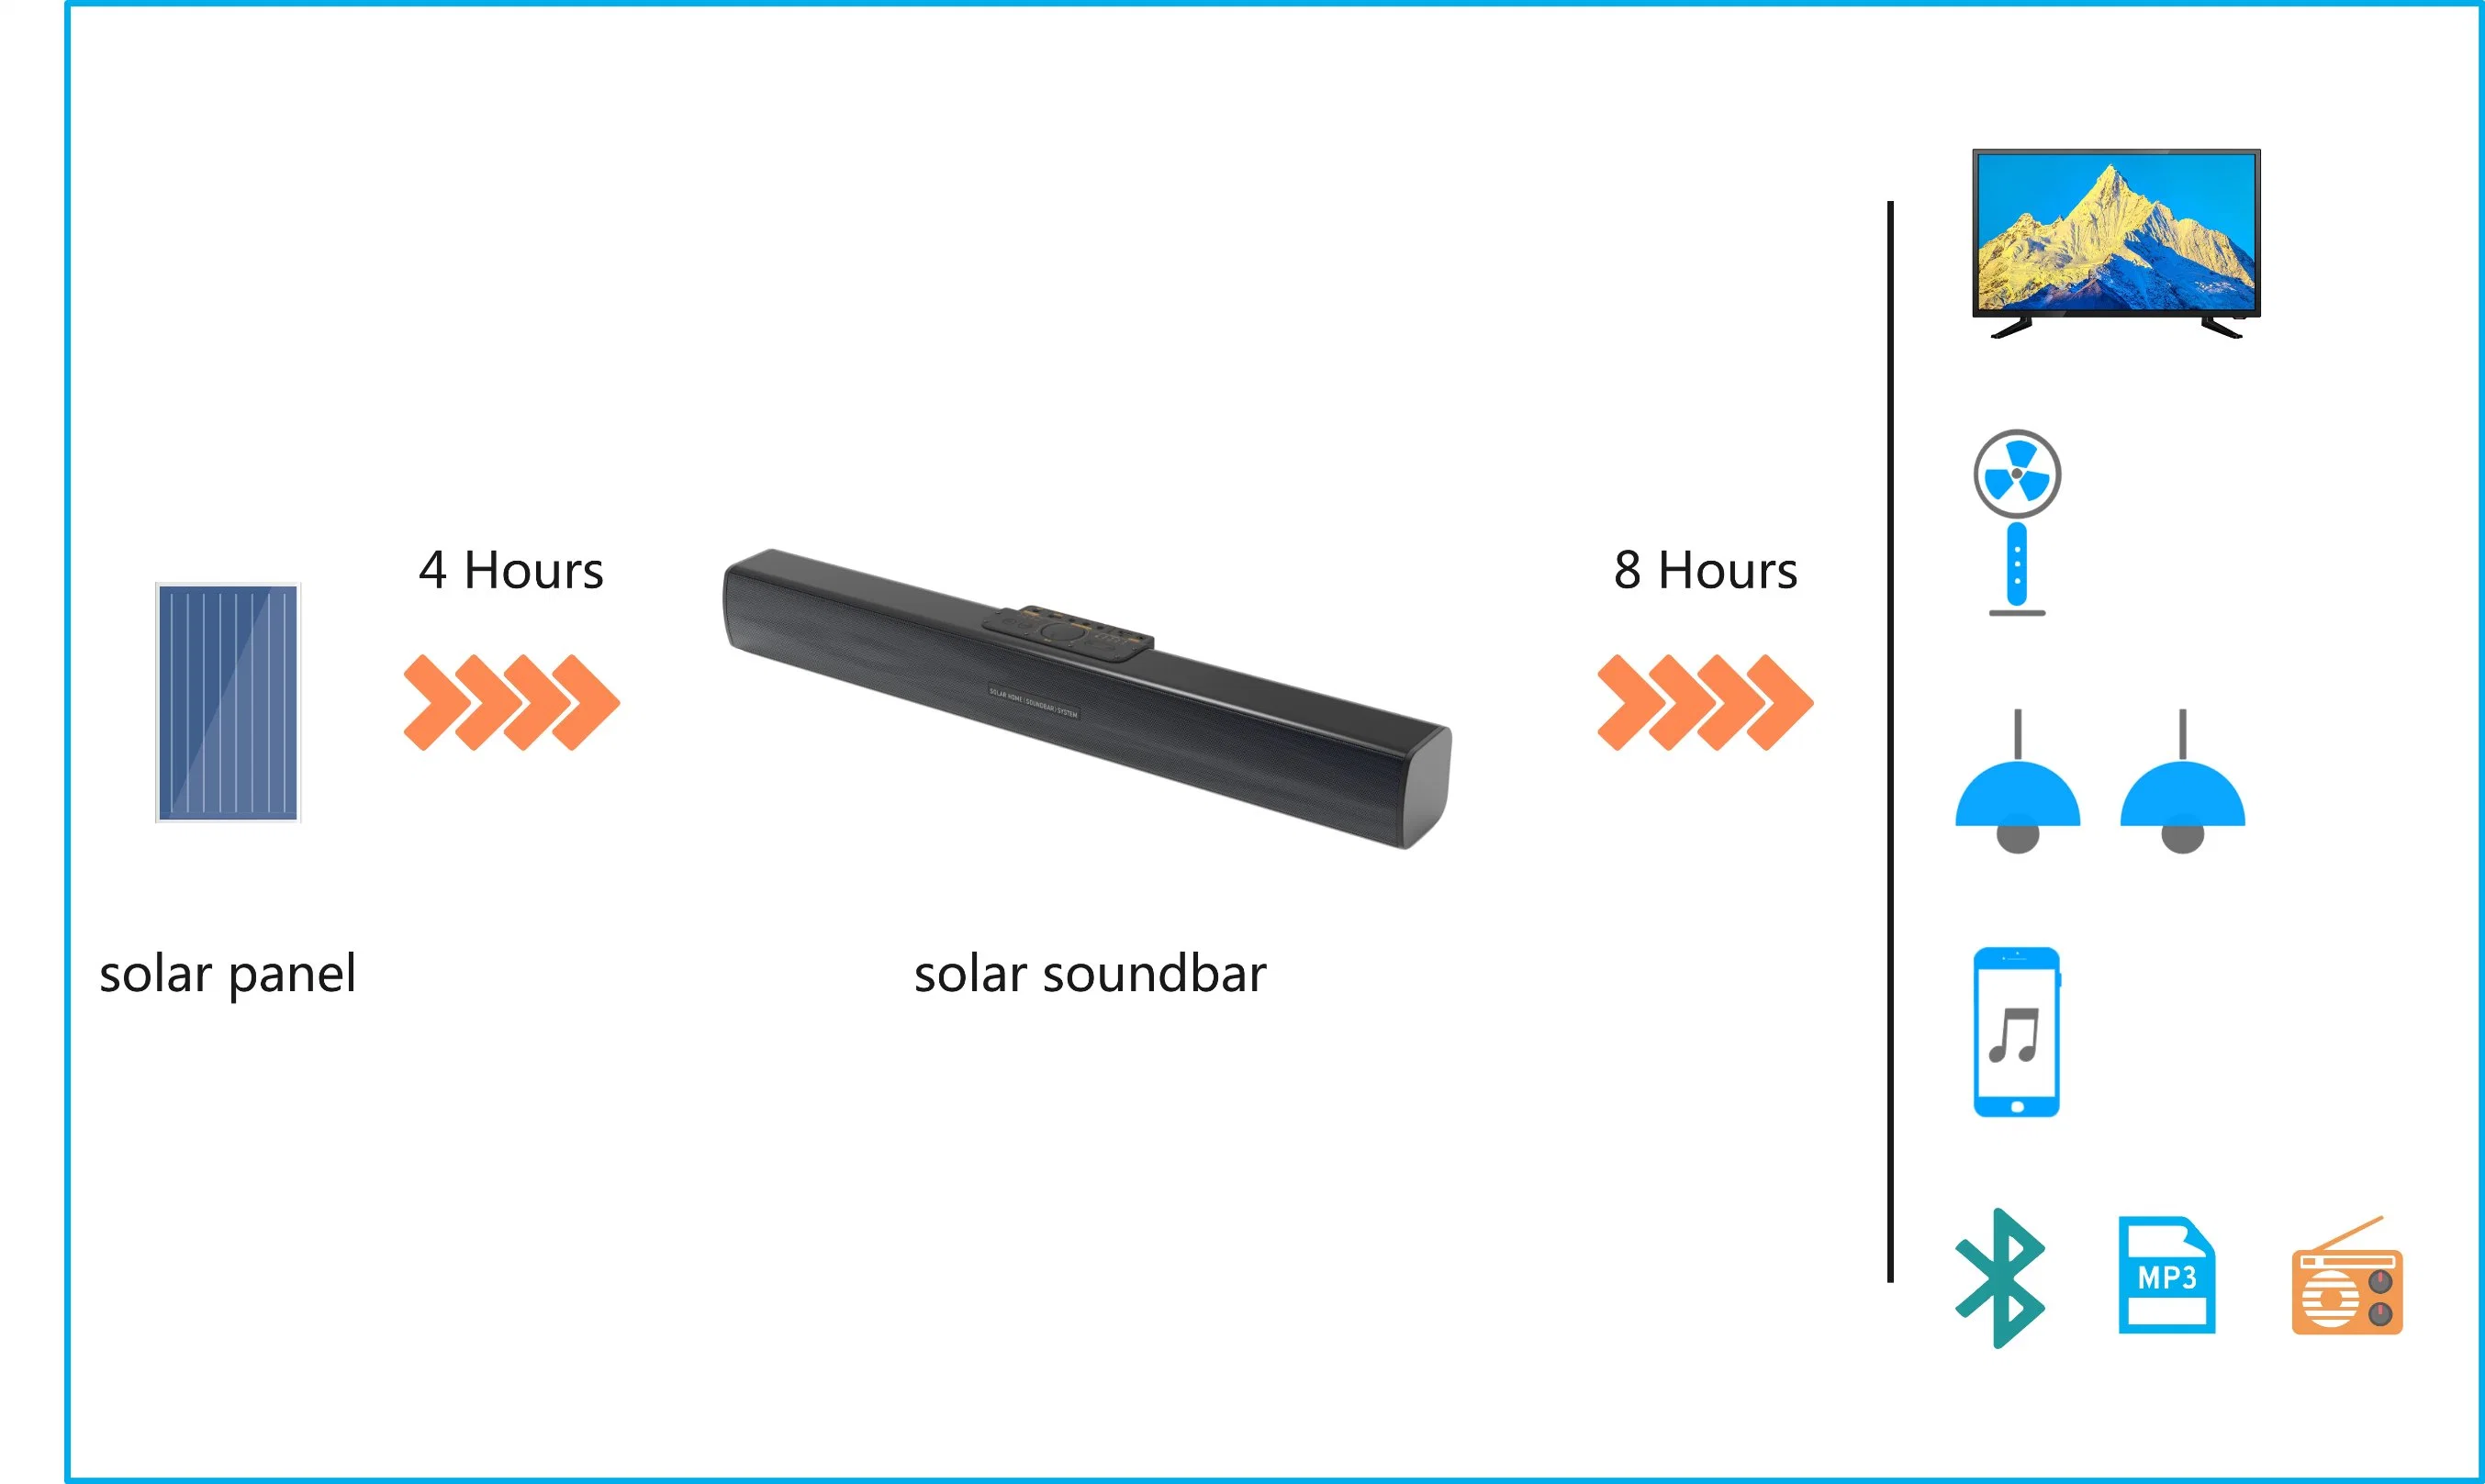 La Iluminación Solar Sistema de sonido Hi-Fi inalámbrica Super Bass exterior resistente al agua IPX5 Moto Moto Banco de potencia del altavoz portátil Bluetooth estéreo